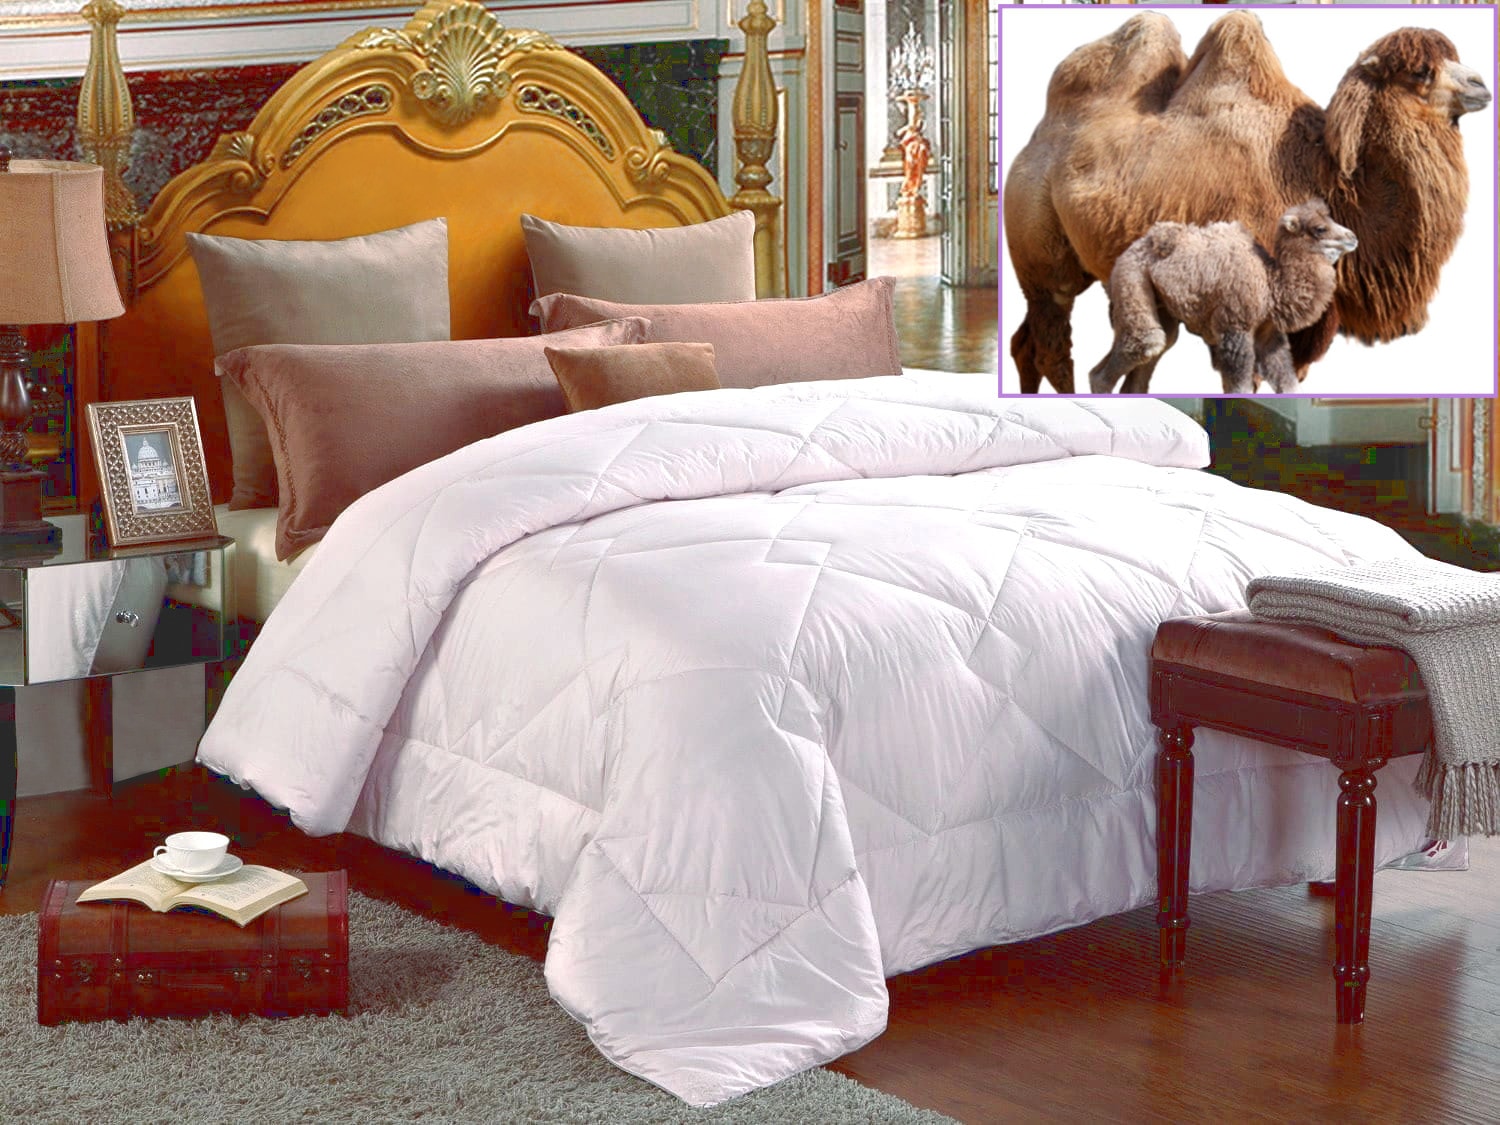 Exclusive Over blanket Camel 100% Merino Wool CAMEL DUVET double 160 x 200 cm 